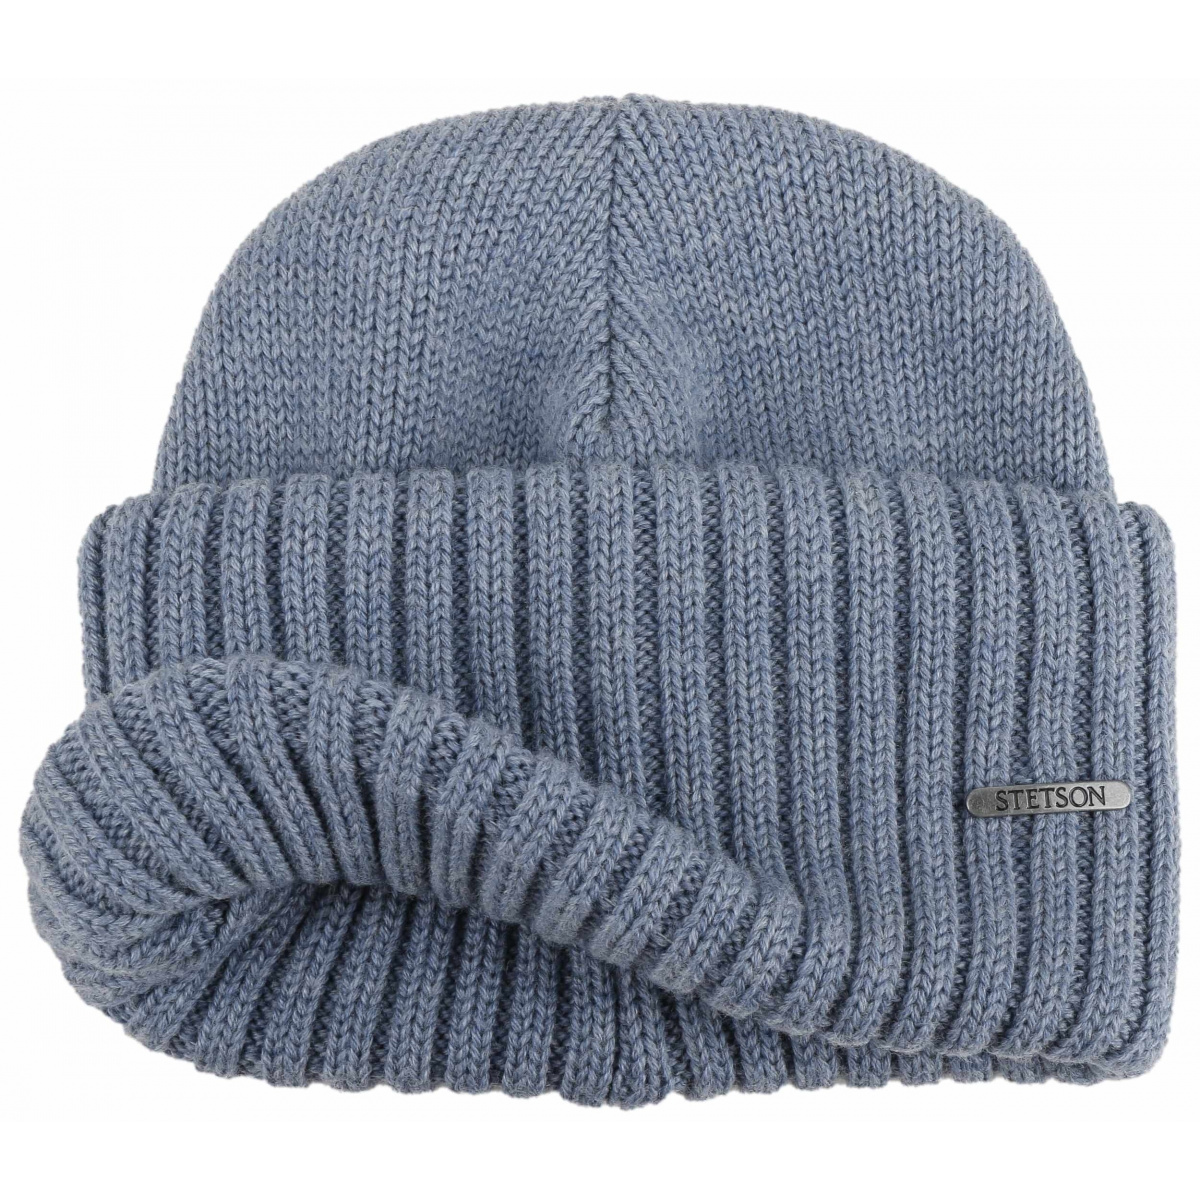 Stetson bonnet long laine bleu par Stetson: 59,00 €